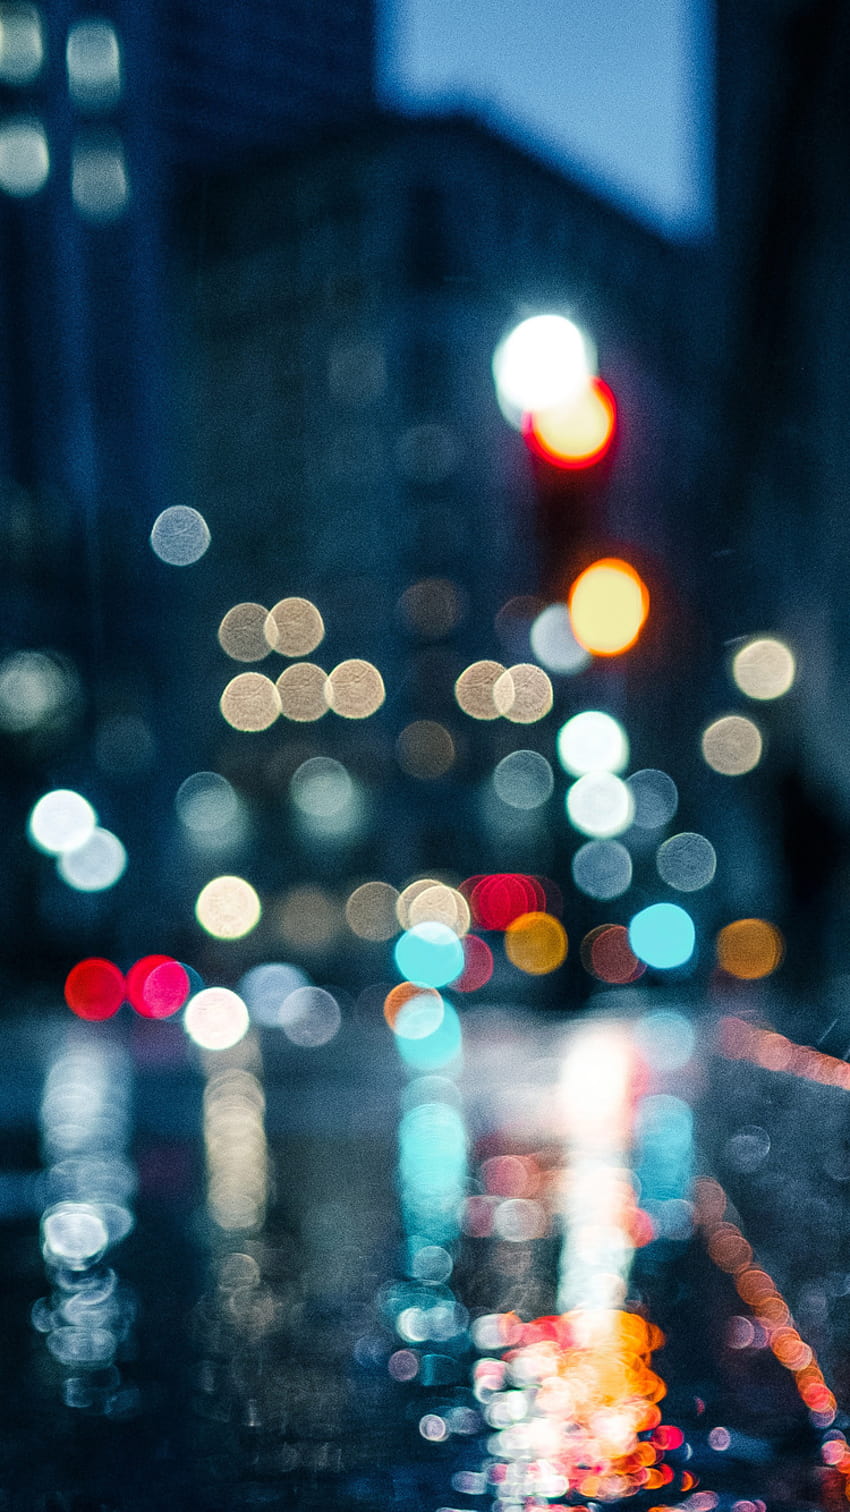 City rain blur: Hình ảnh của thành phố trong mưa nhưng được loại bỏ các chi tiết để tạo hiệu ứng hoàn toàn mờ làm tăng thêm sự mơ màng và cảm giác thư thái. Bạn sẽ có cảm giác như đang du hành giữa những phố phường trong một trạng thái tâm trạng.